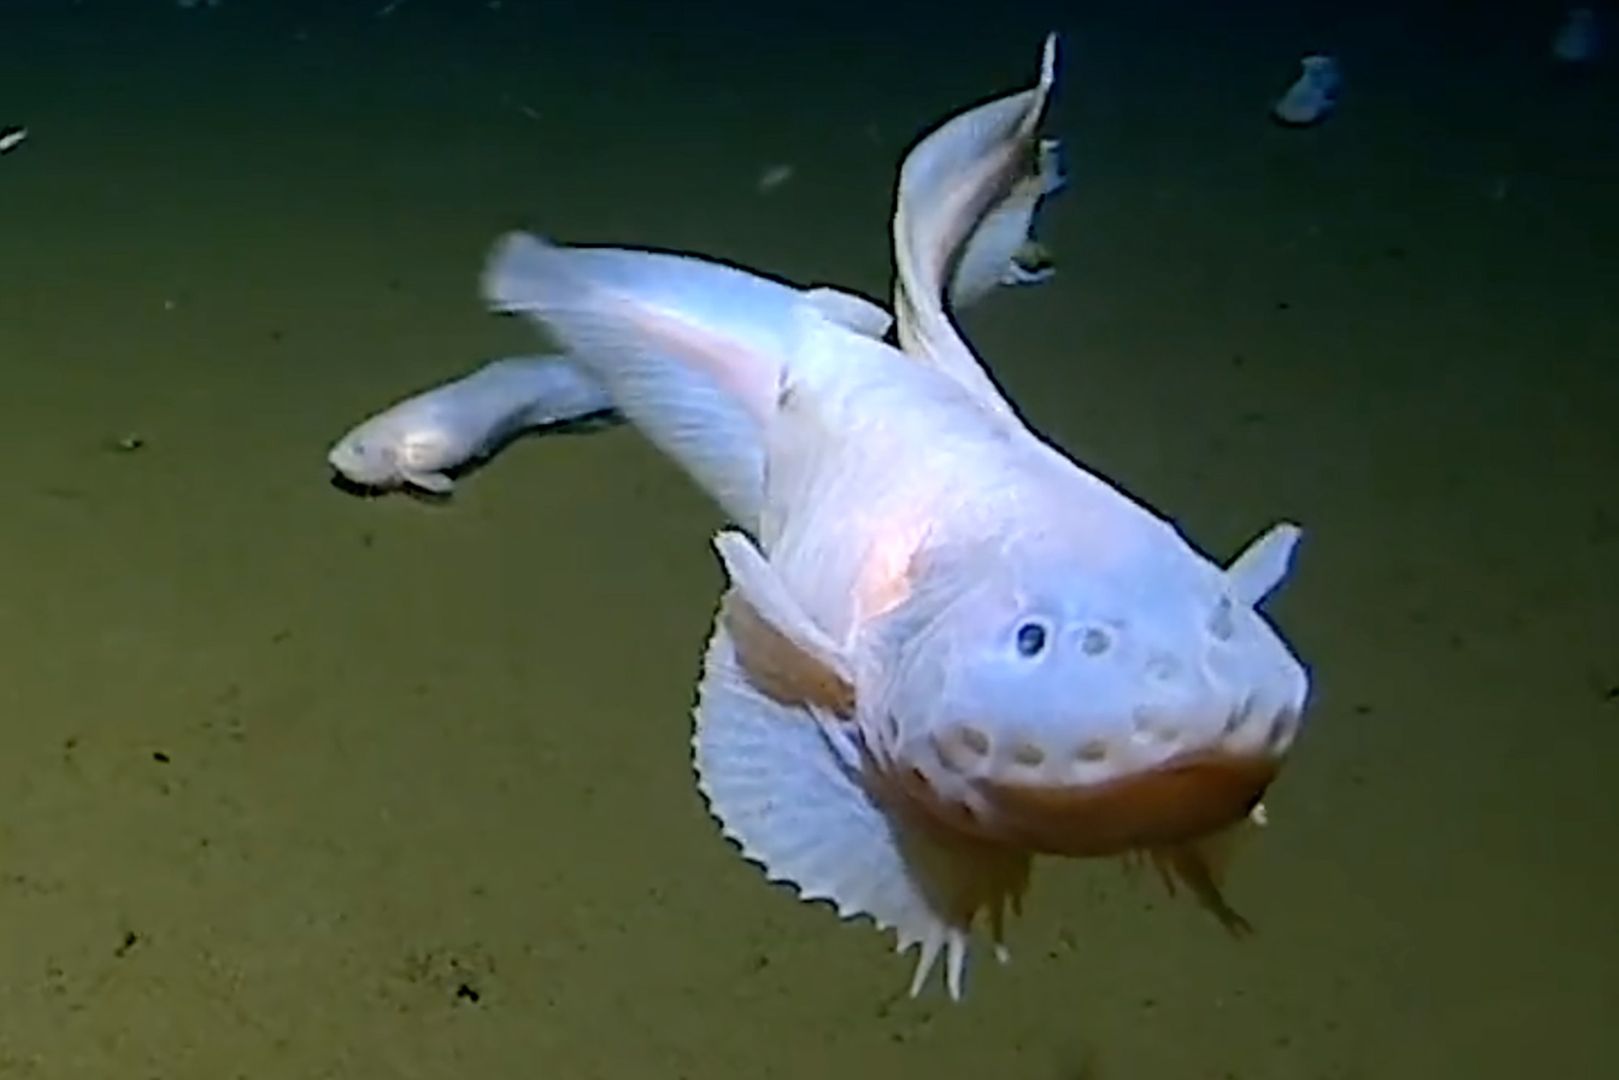 Żyją Na Samym Dnie Oceanu Dziwne Ryby Pływają Na Głębokości 8 Km 4597